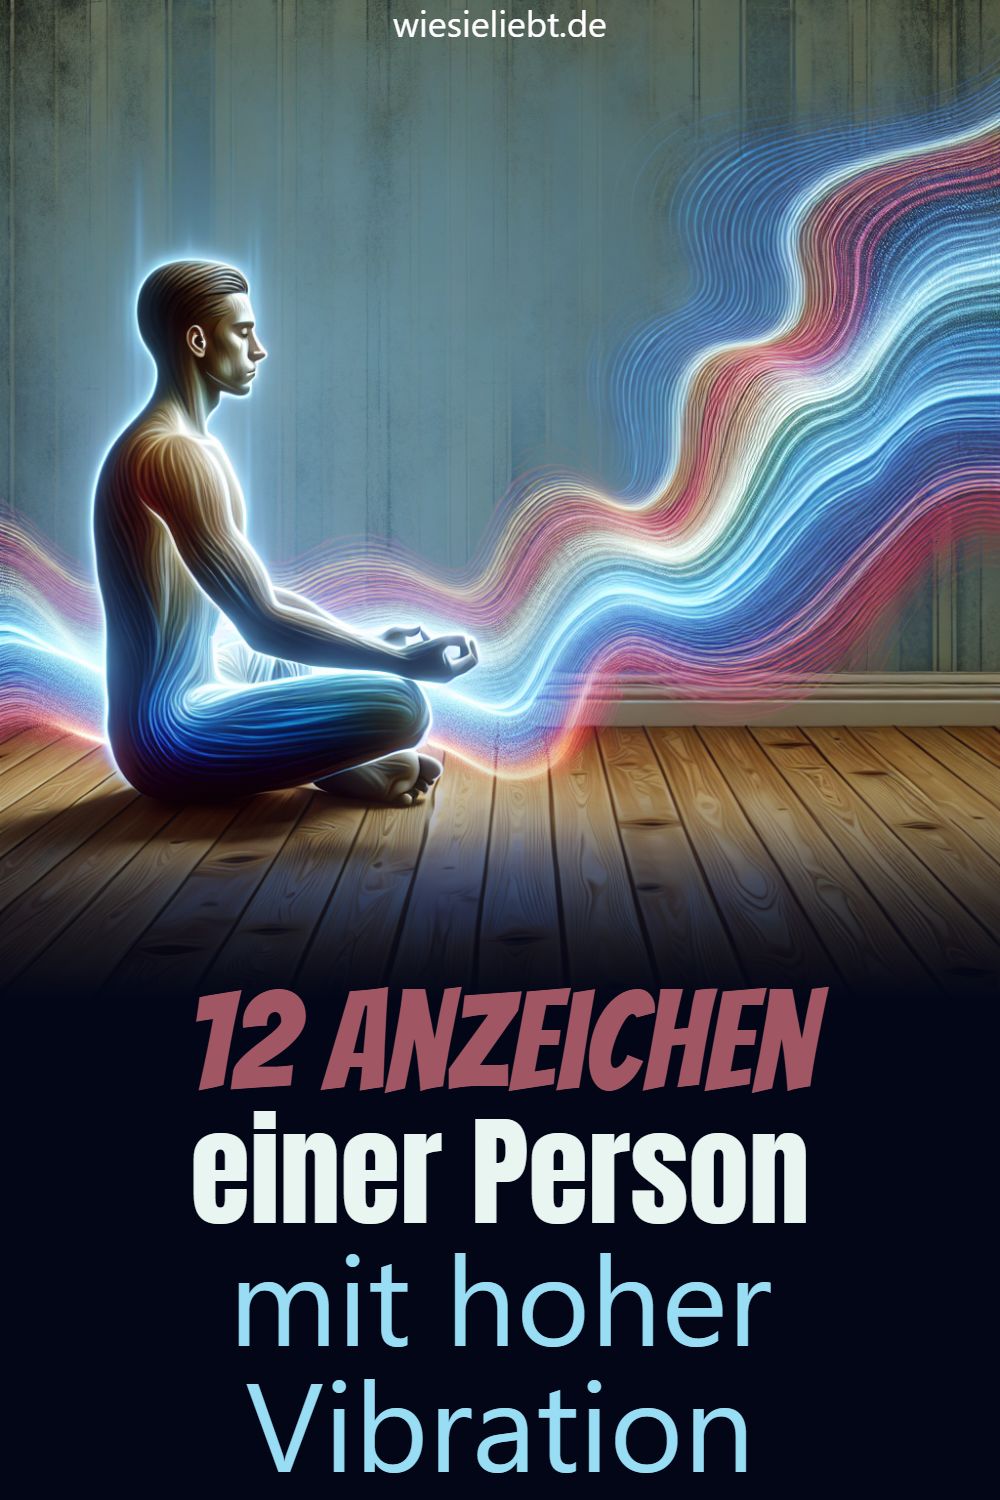 12 Anzeichen einer Person mit hoher Vibration